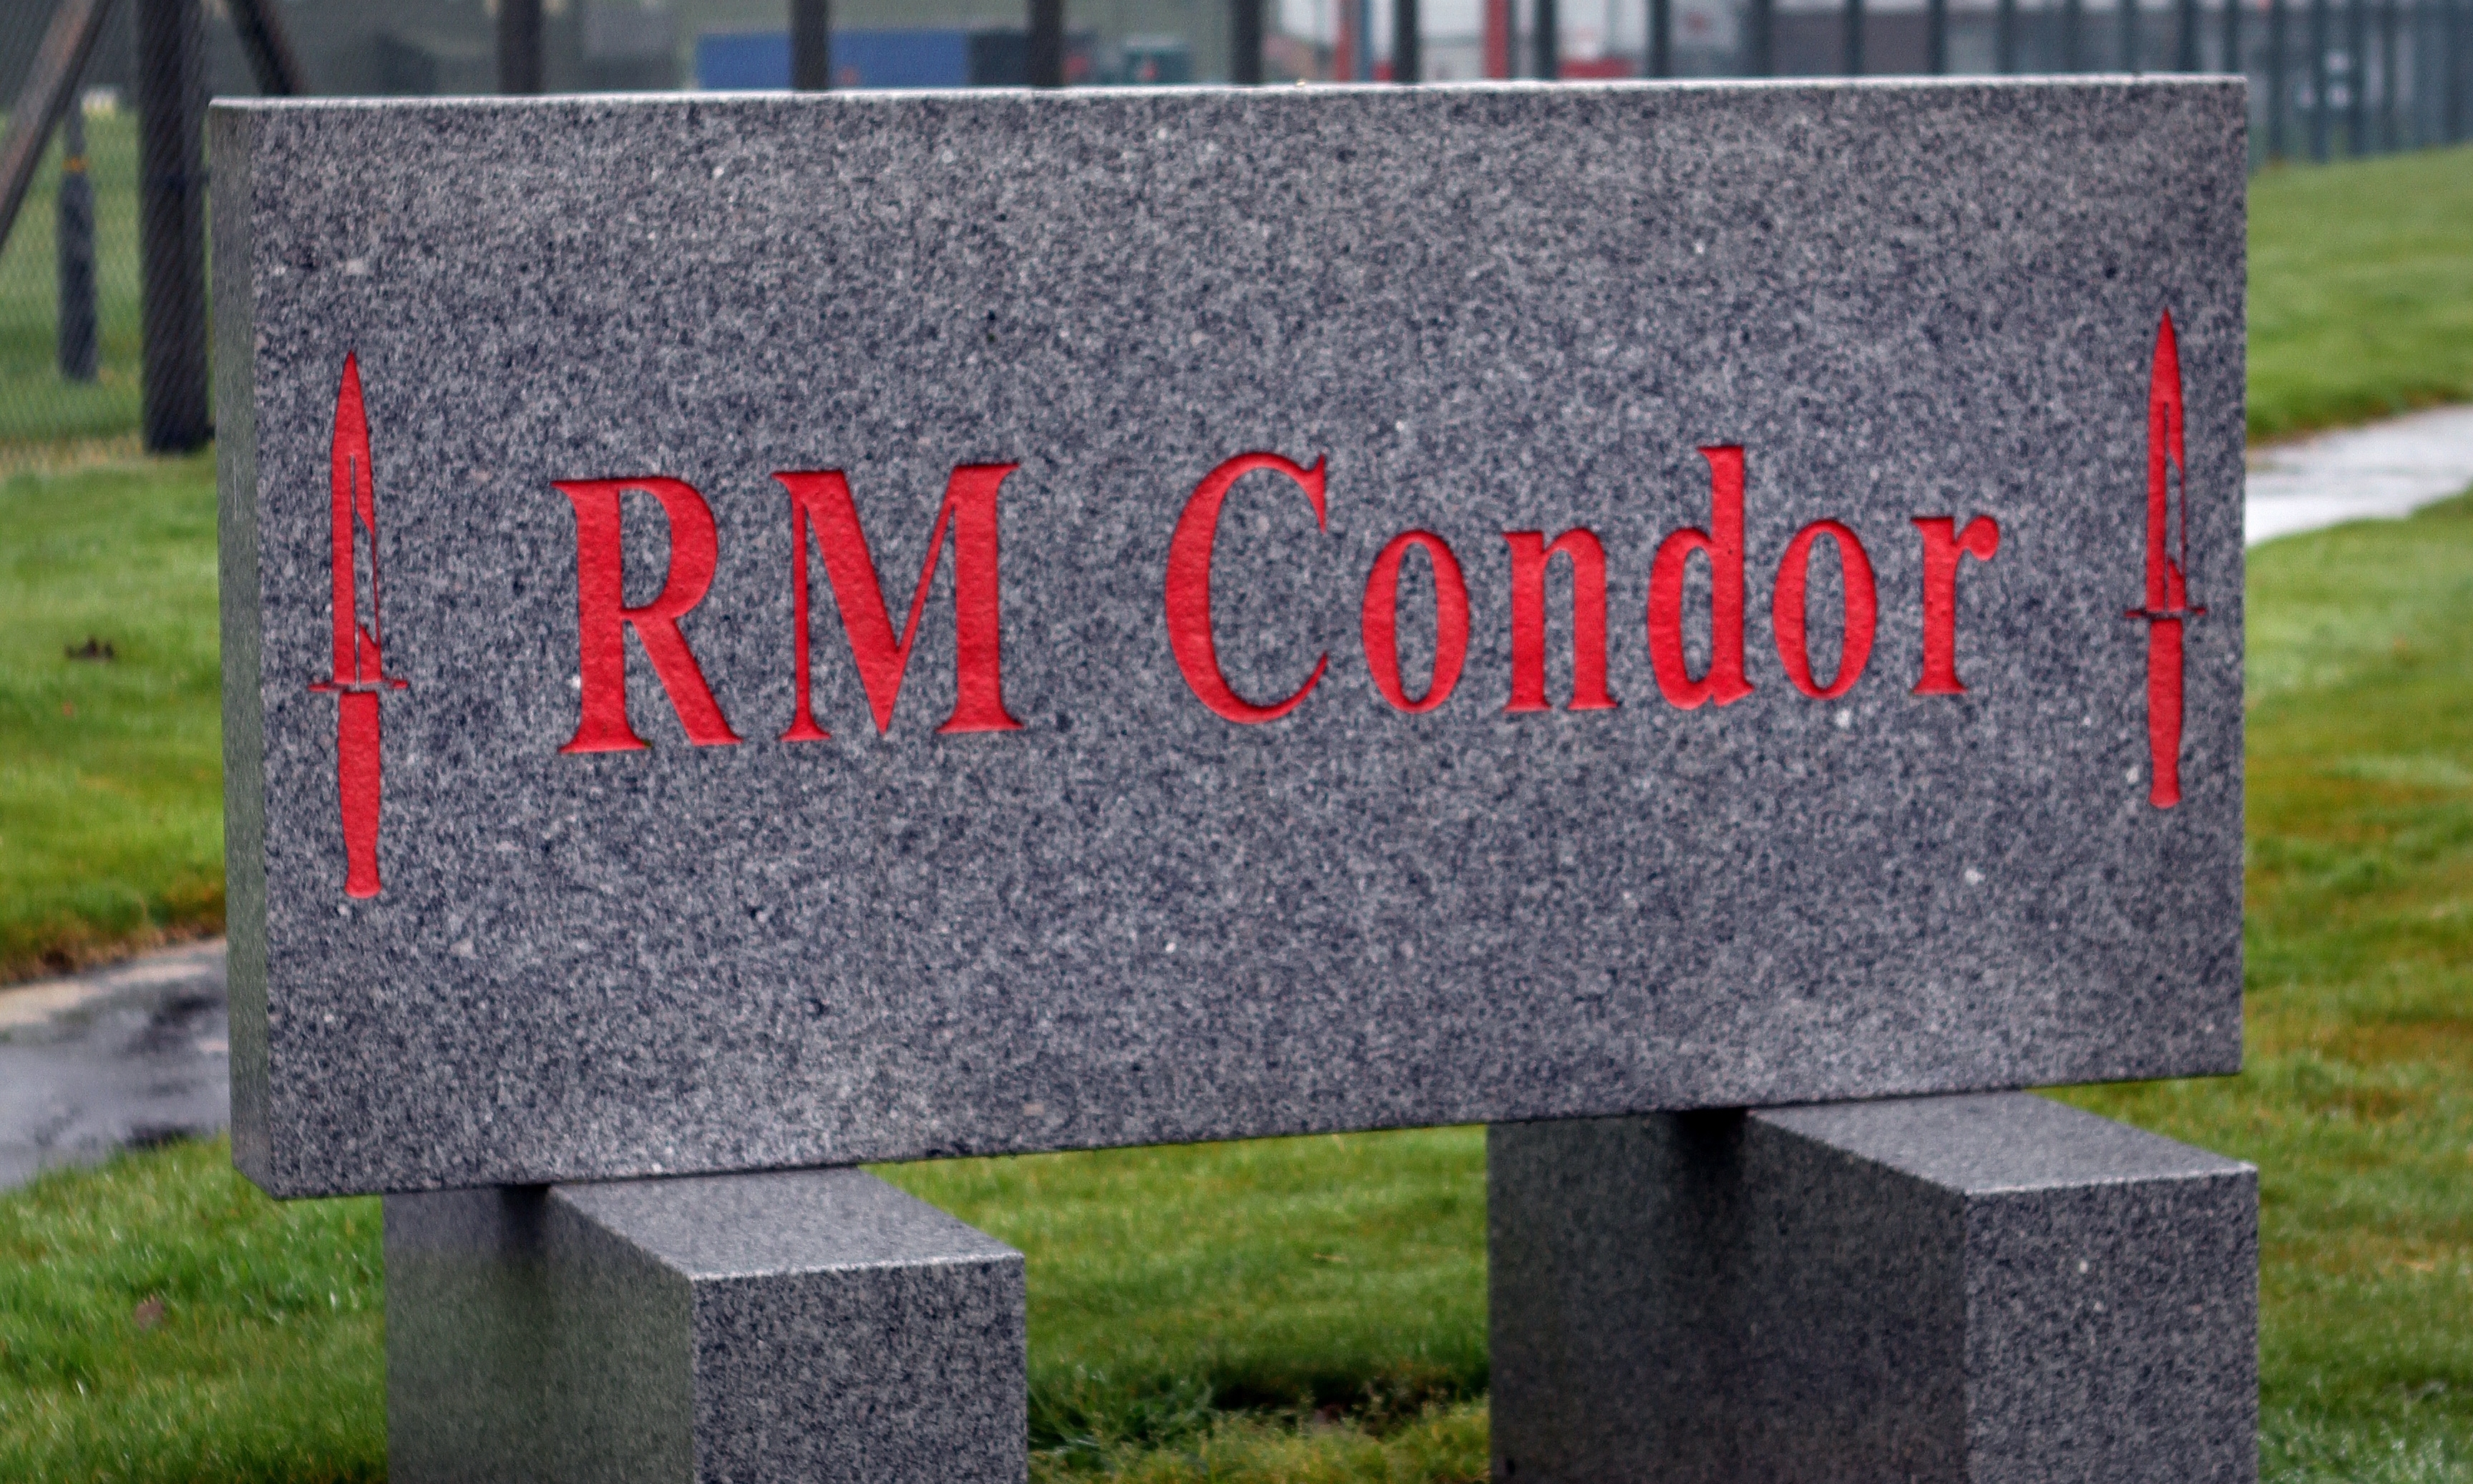 The Royal Marines will be kept at RM Condor, says David Mundell.